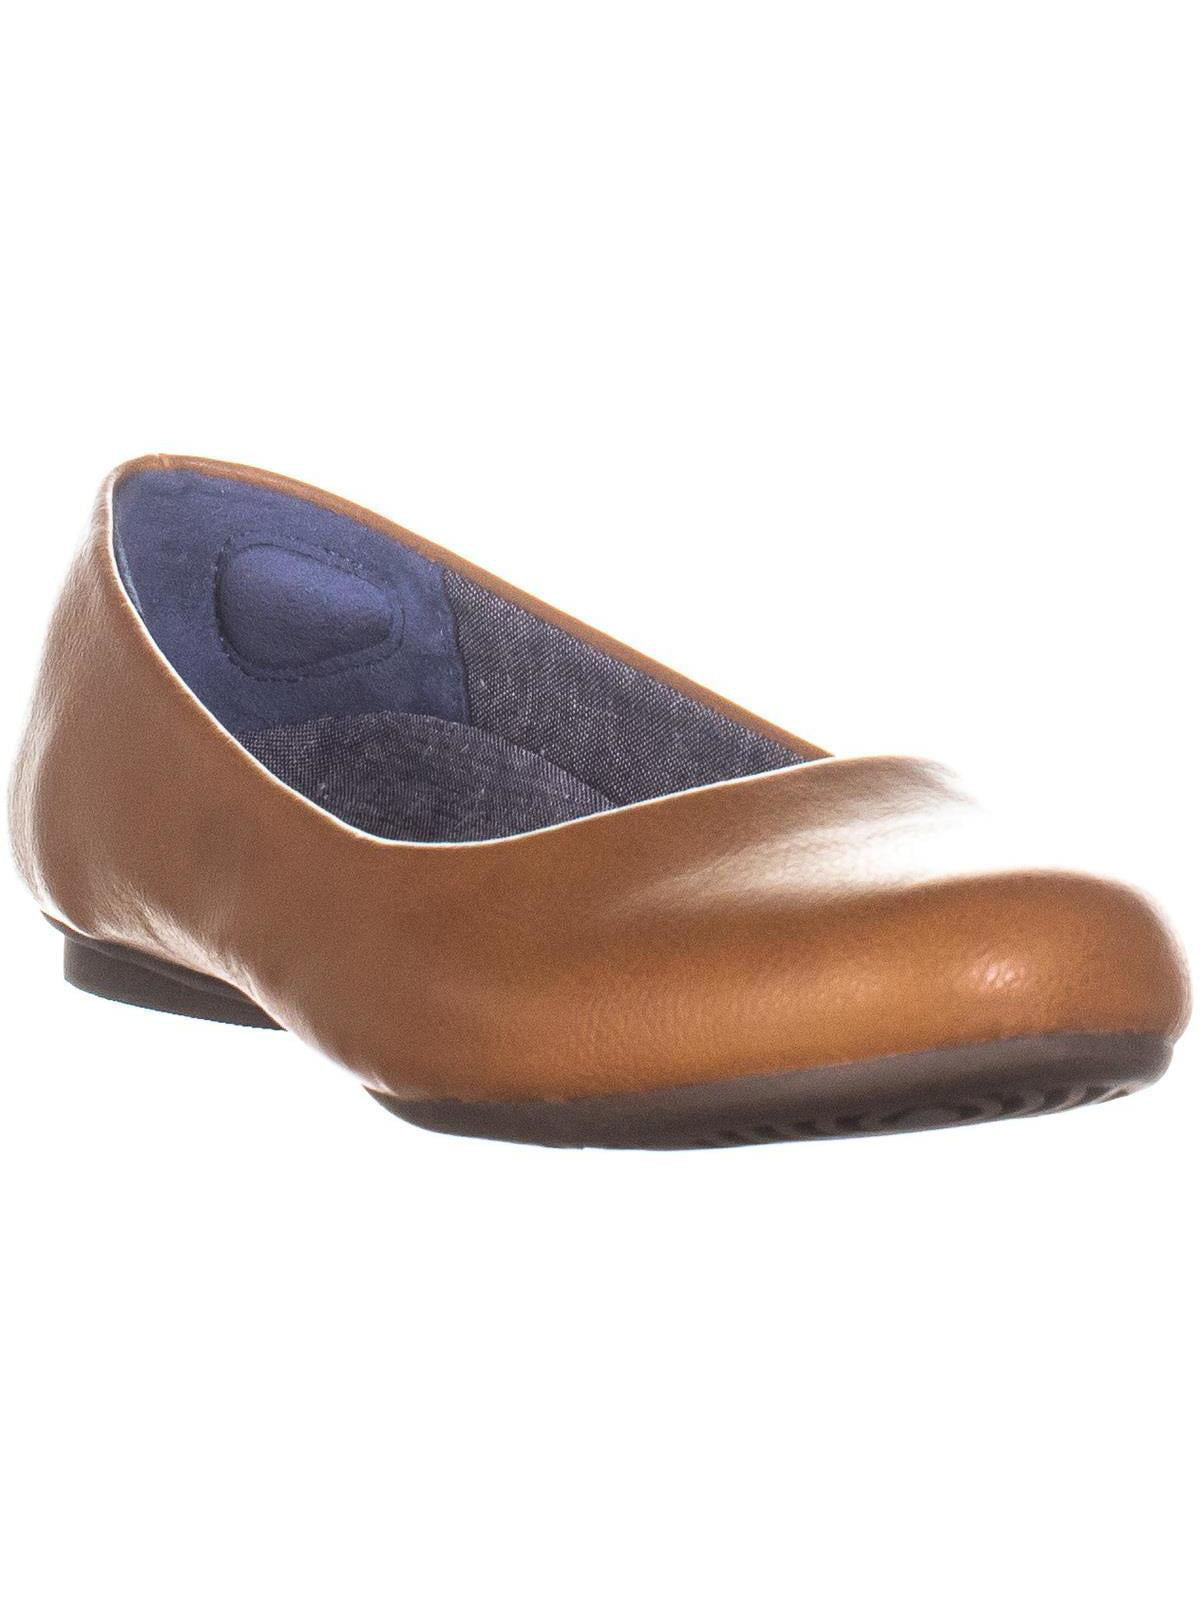 Dr. Scholl's Shoes - Womens Dr. Scholls Shoes Friendly2 Ballet Flats ...